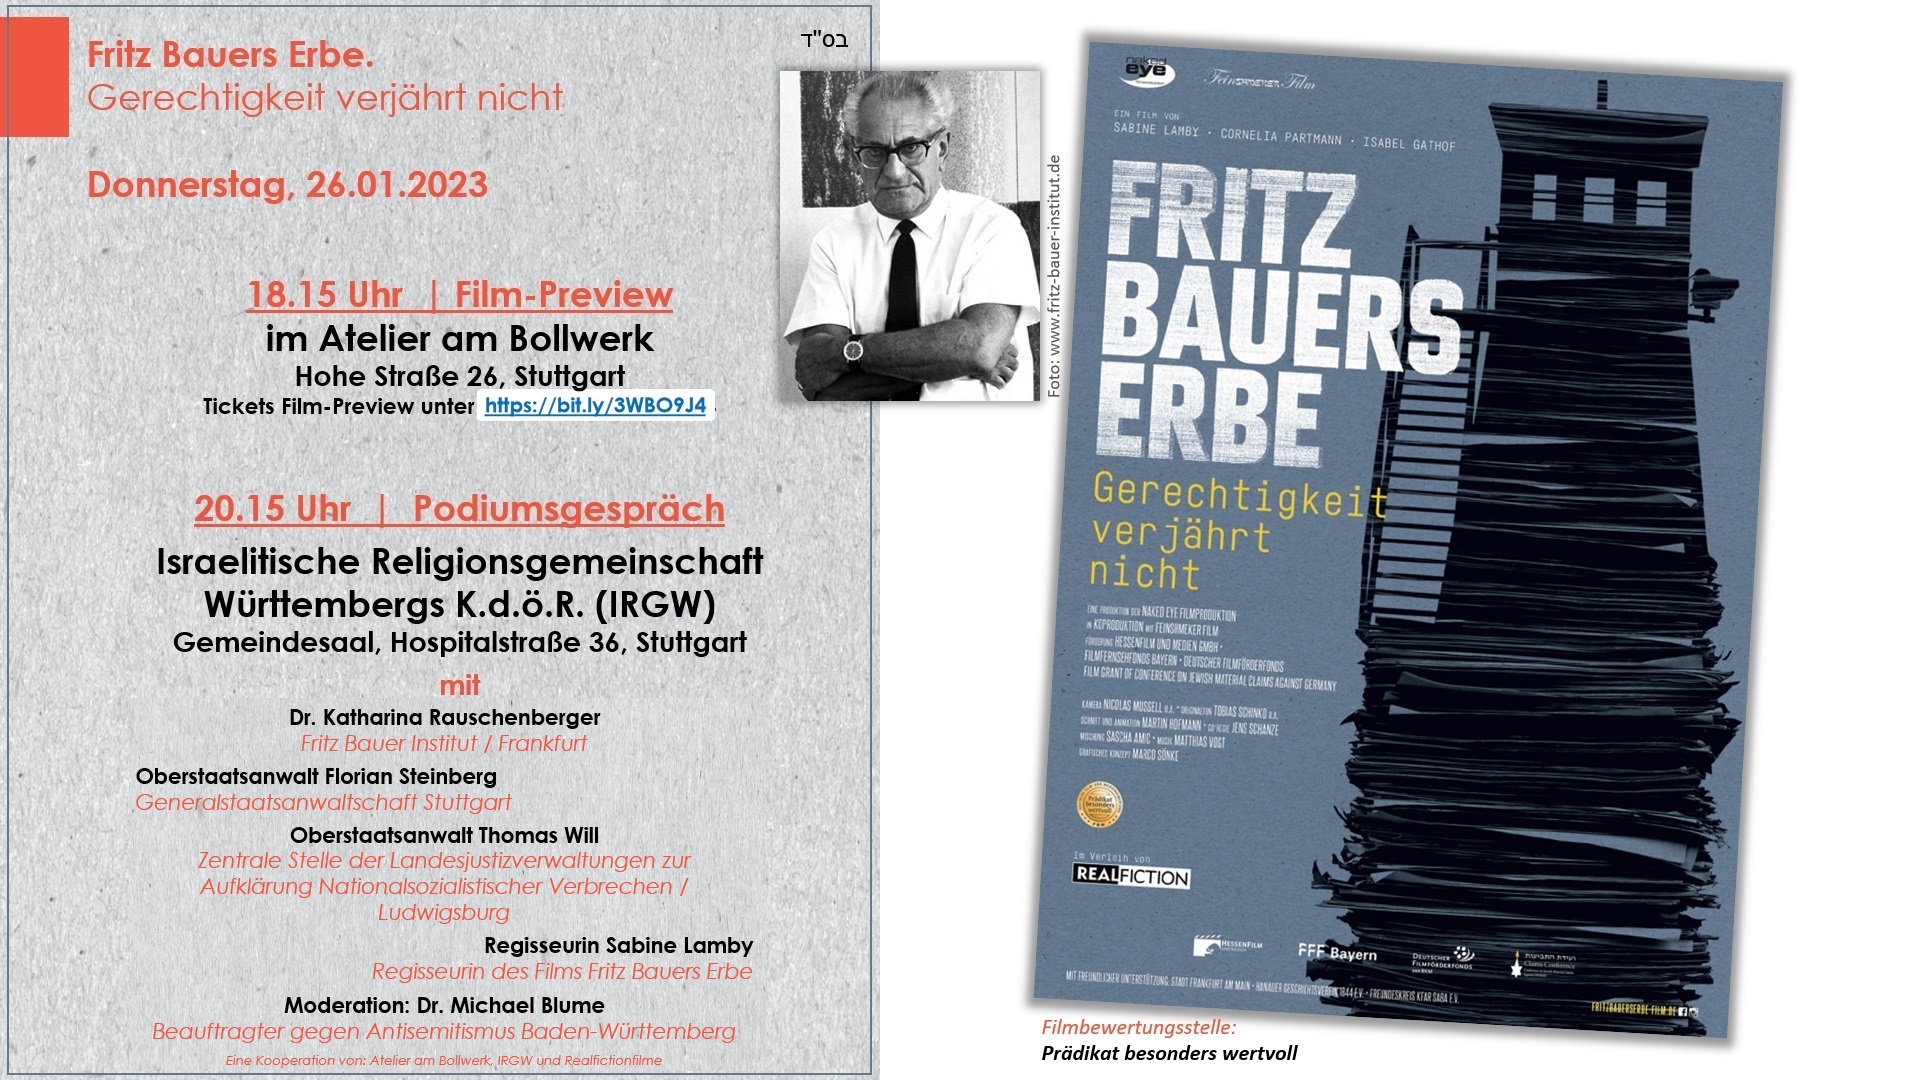 Fritz Bauers Erbe. Gerechtigkeit verjhrt nicht - Do, 26.01.2023, 18.15 - Film-Preview & 20.15 - Podiumsgesprch